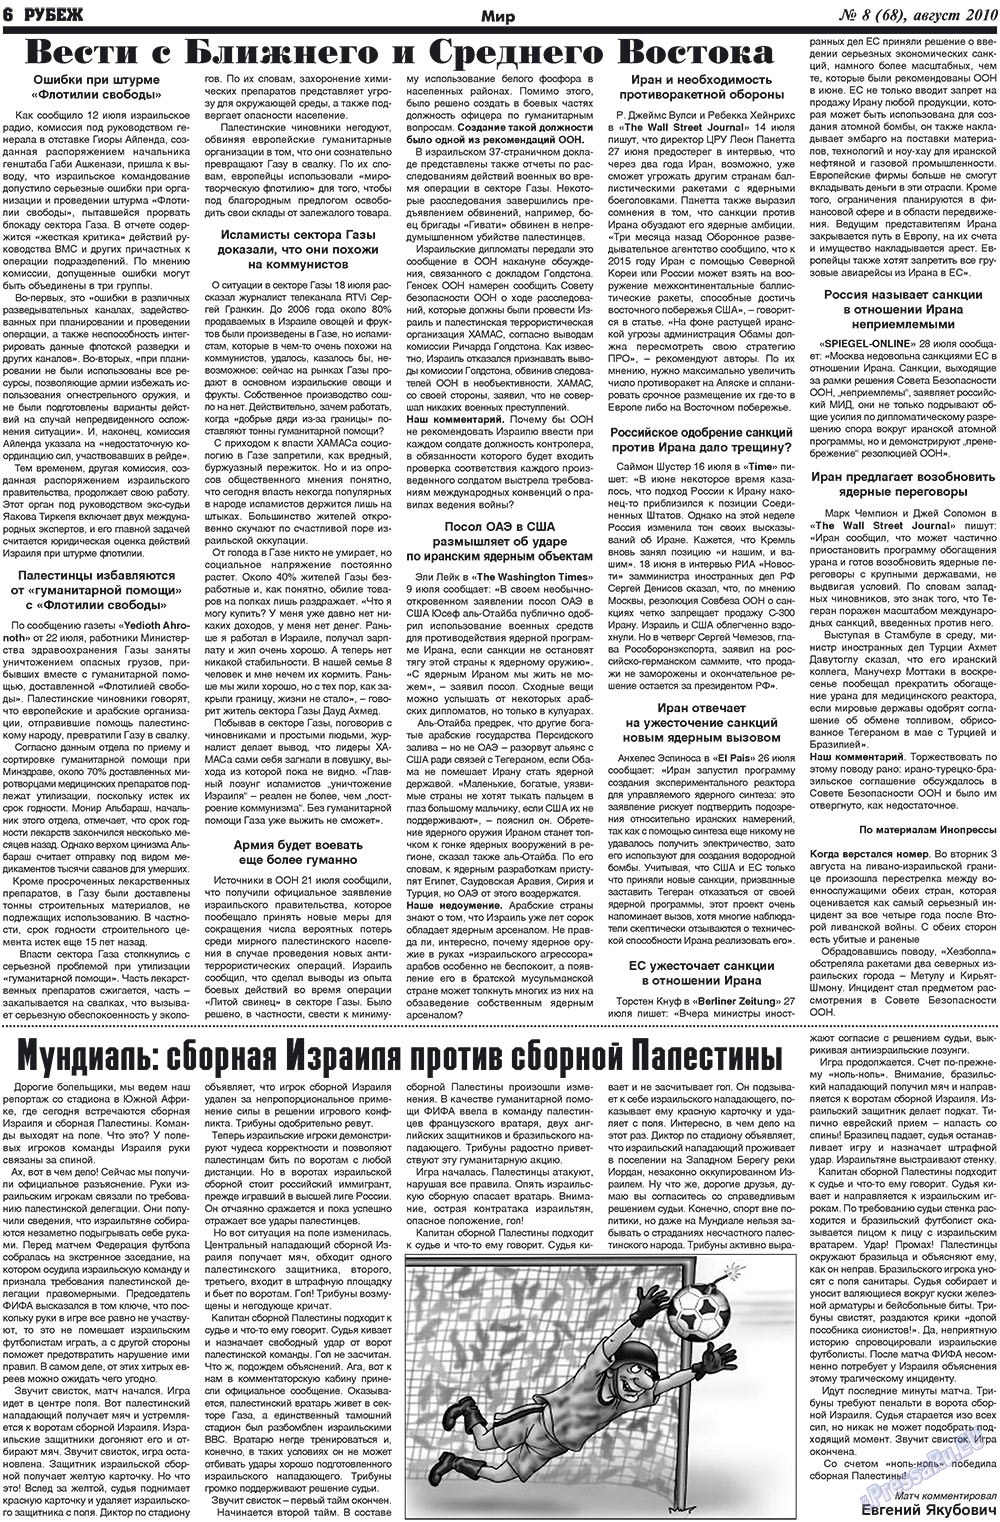 Рубеж (газета). 2010 год, номер 8, стр. 6